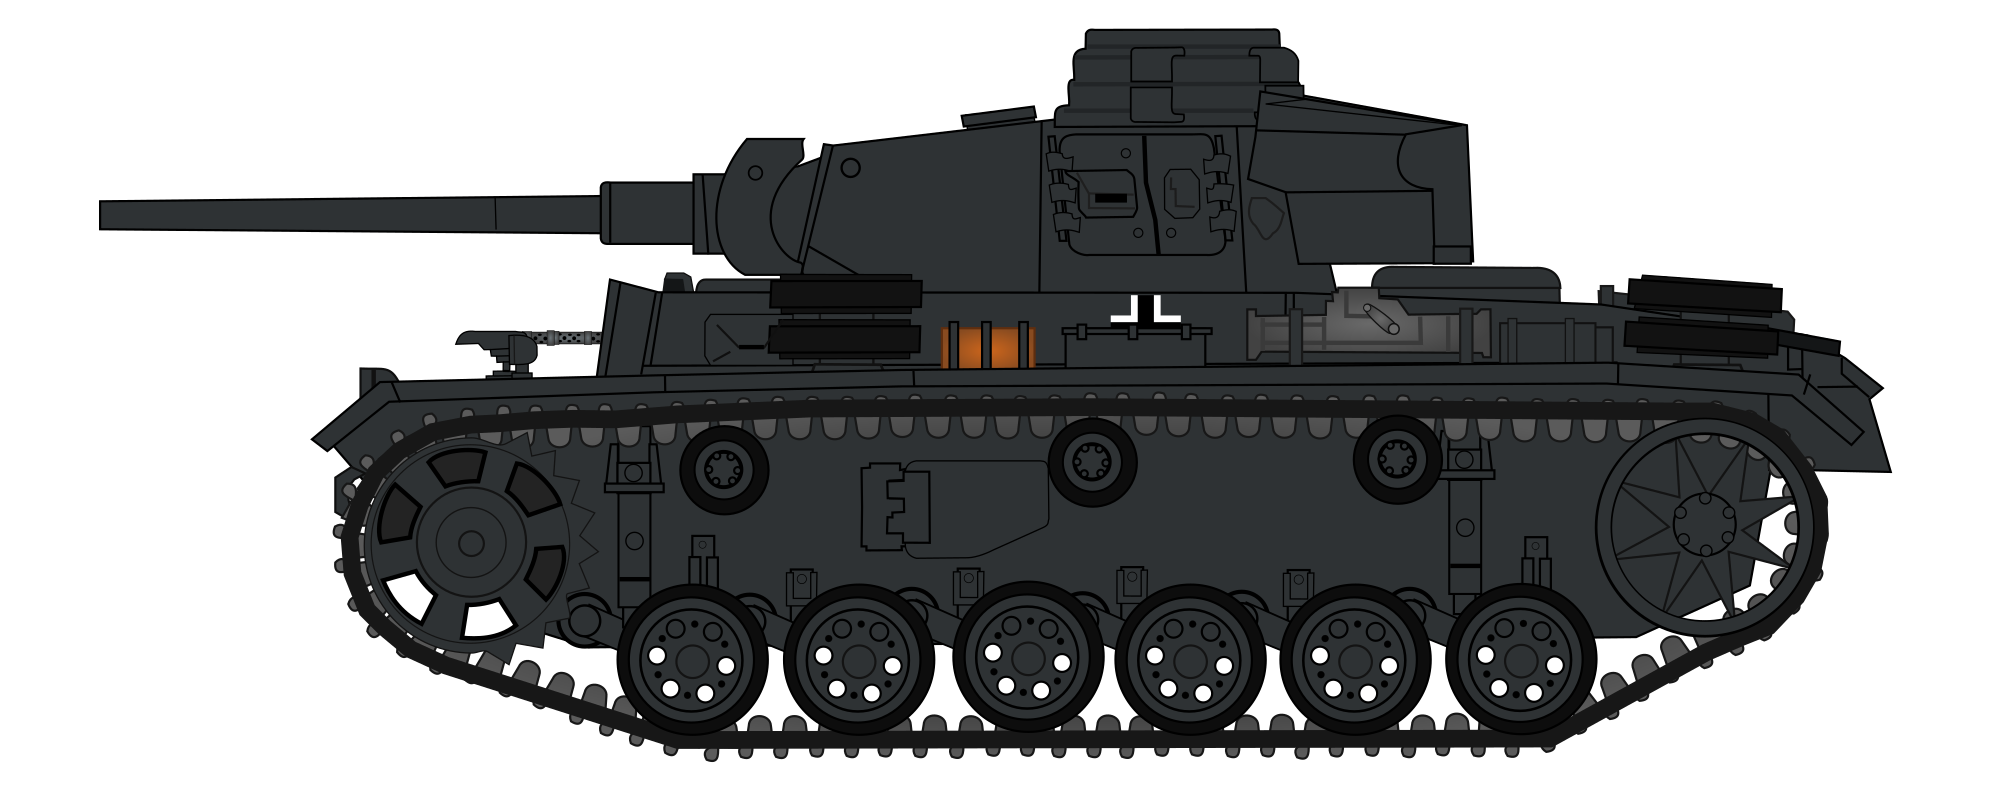 Черчилль танк Геранд. PZ 4 Геранд танк. Панзер 44 Геранд. Panzer немецкий танк вид сбоку. Немецкие танки геранда